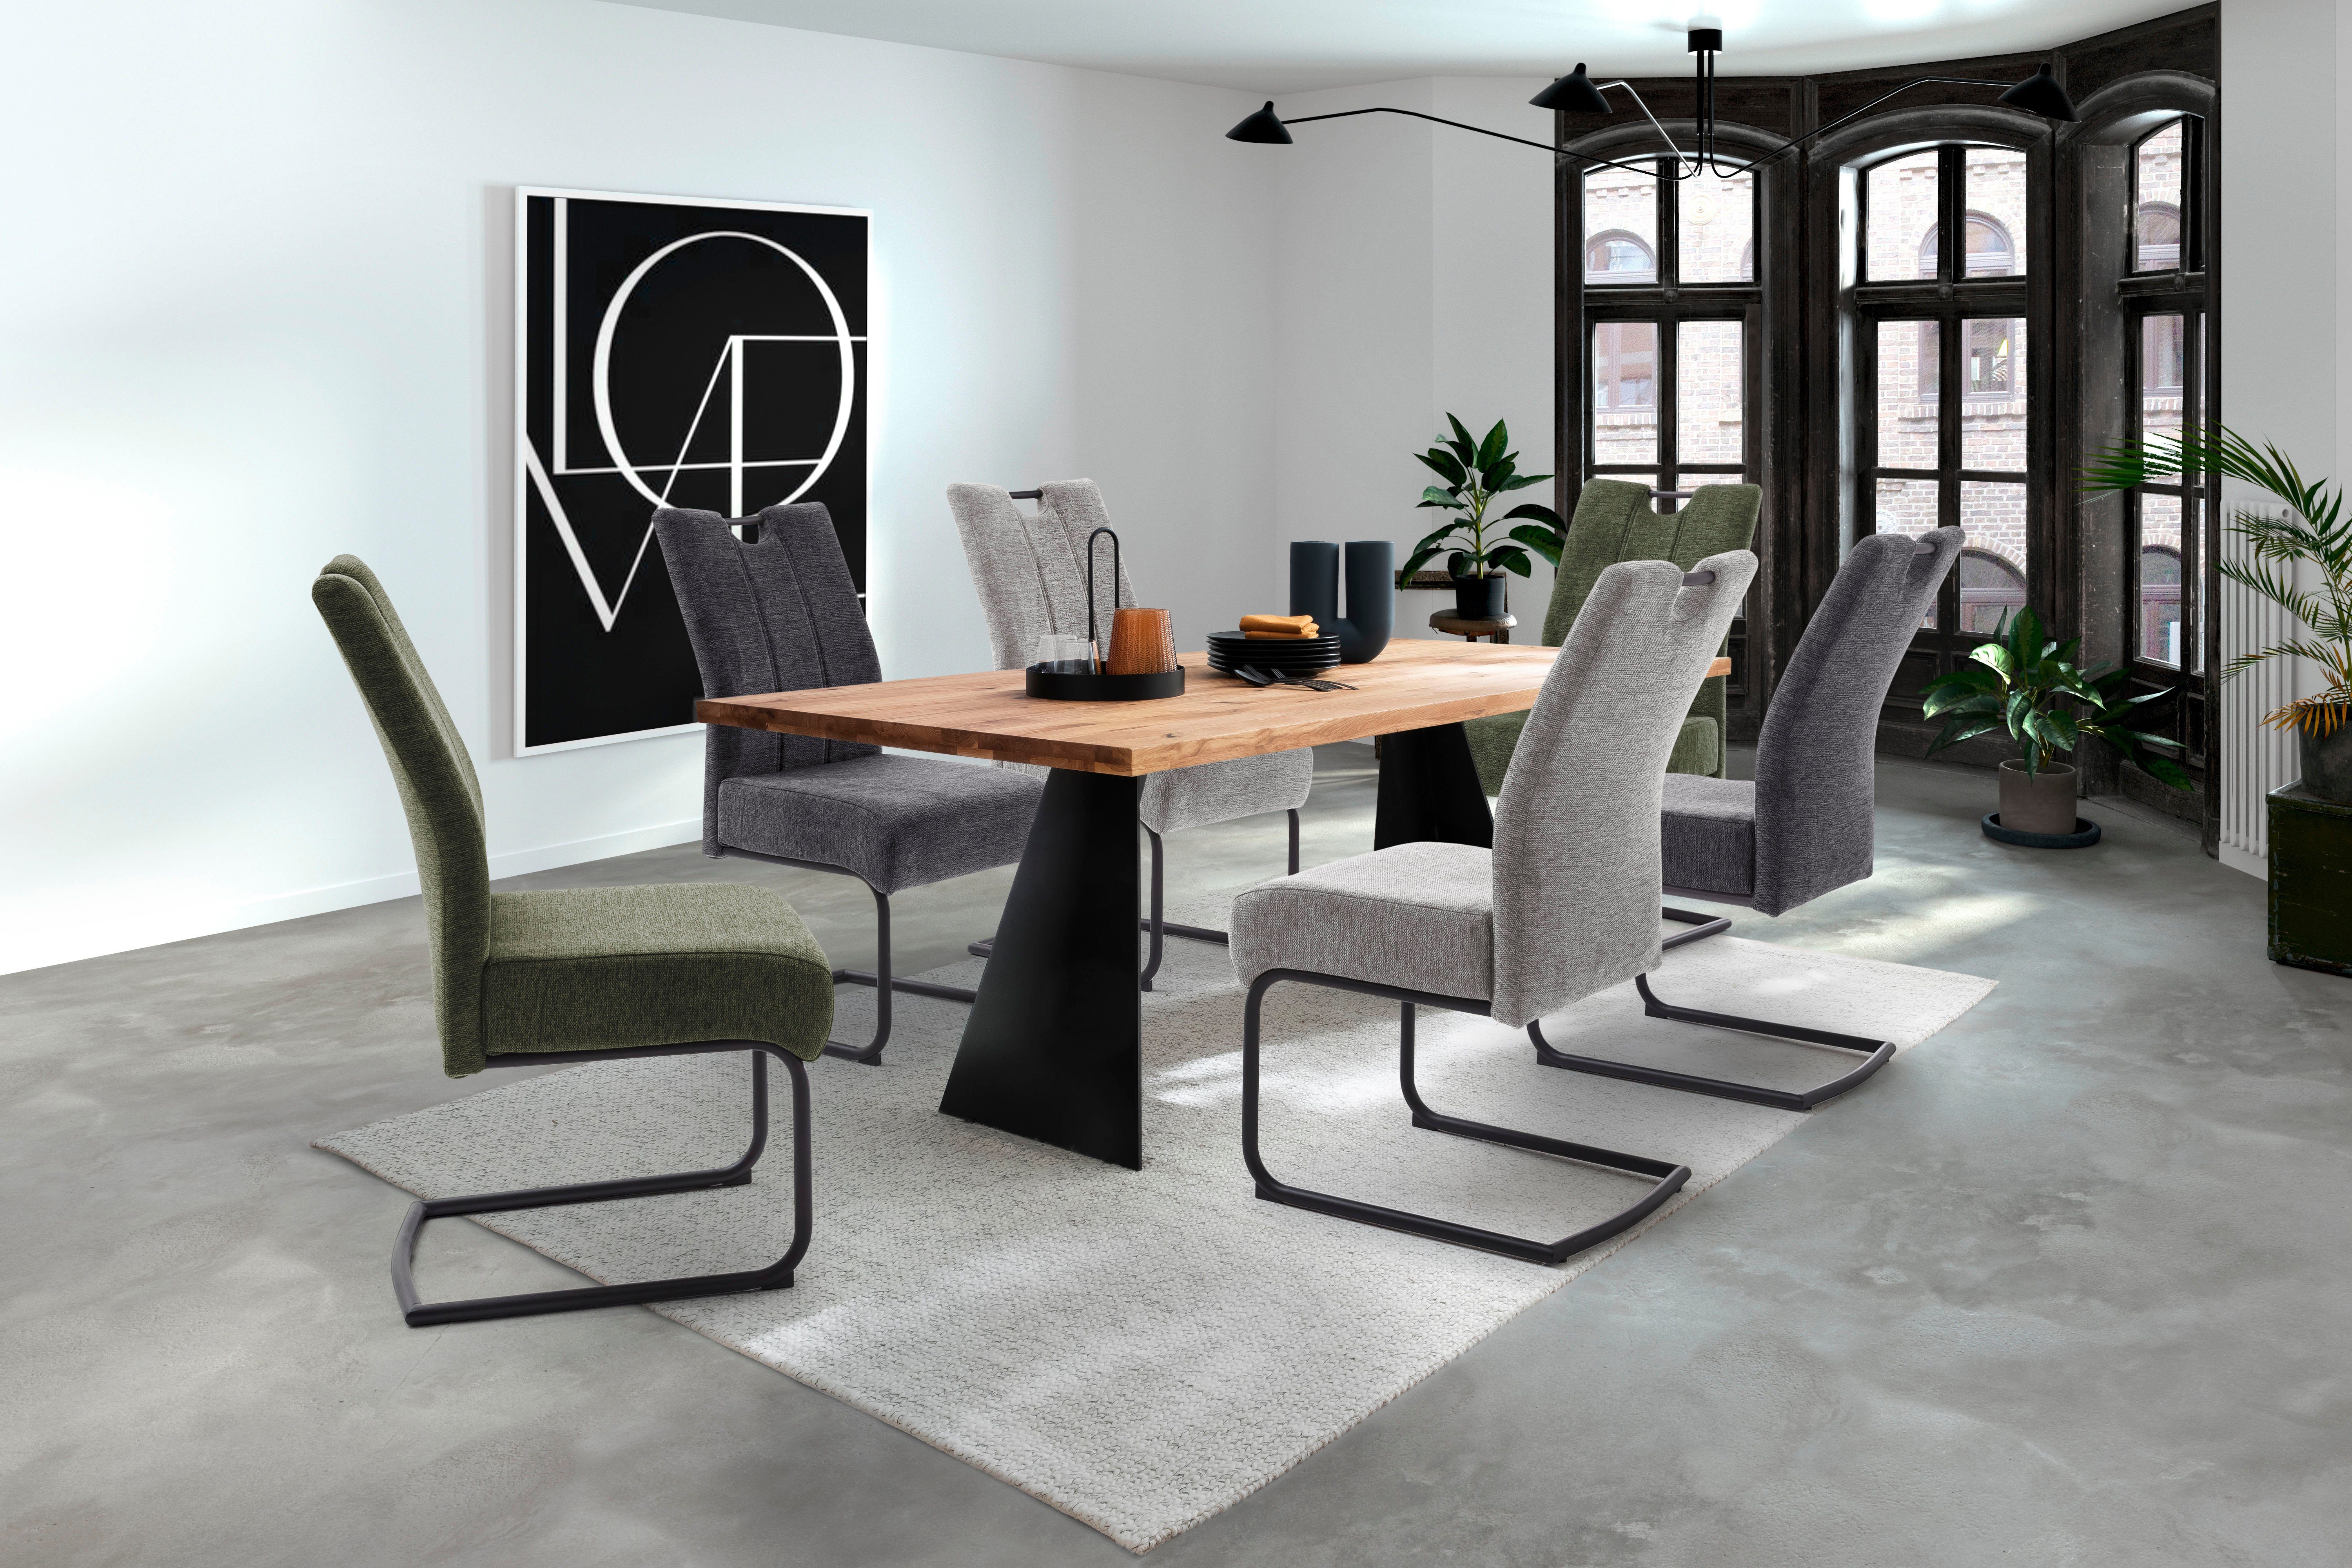 MCA furniture Esszimmerstuhl AMERY | grau grau